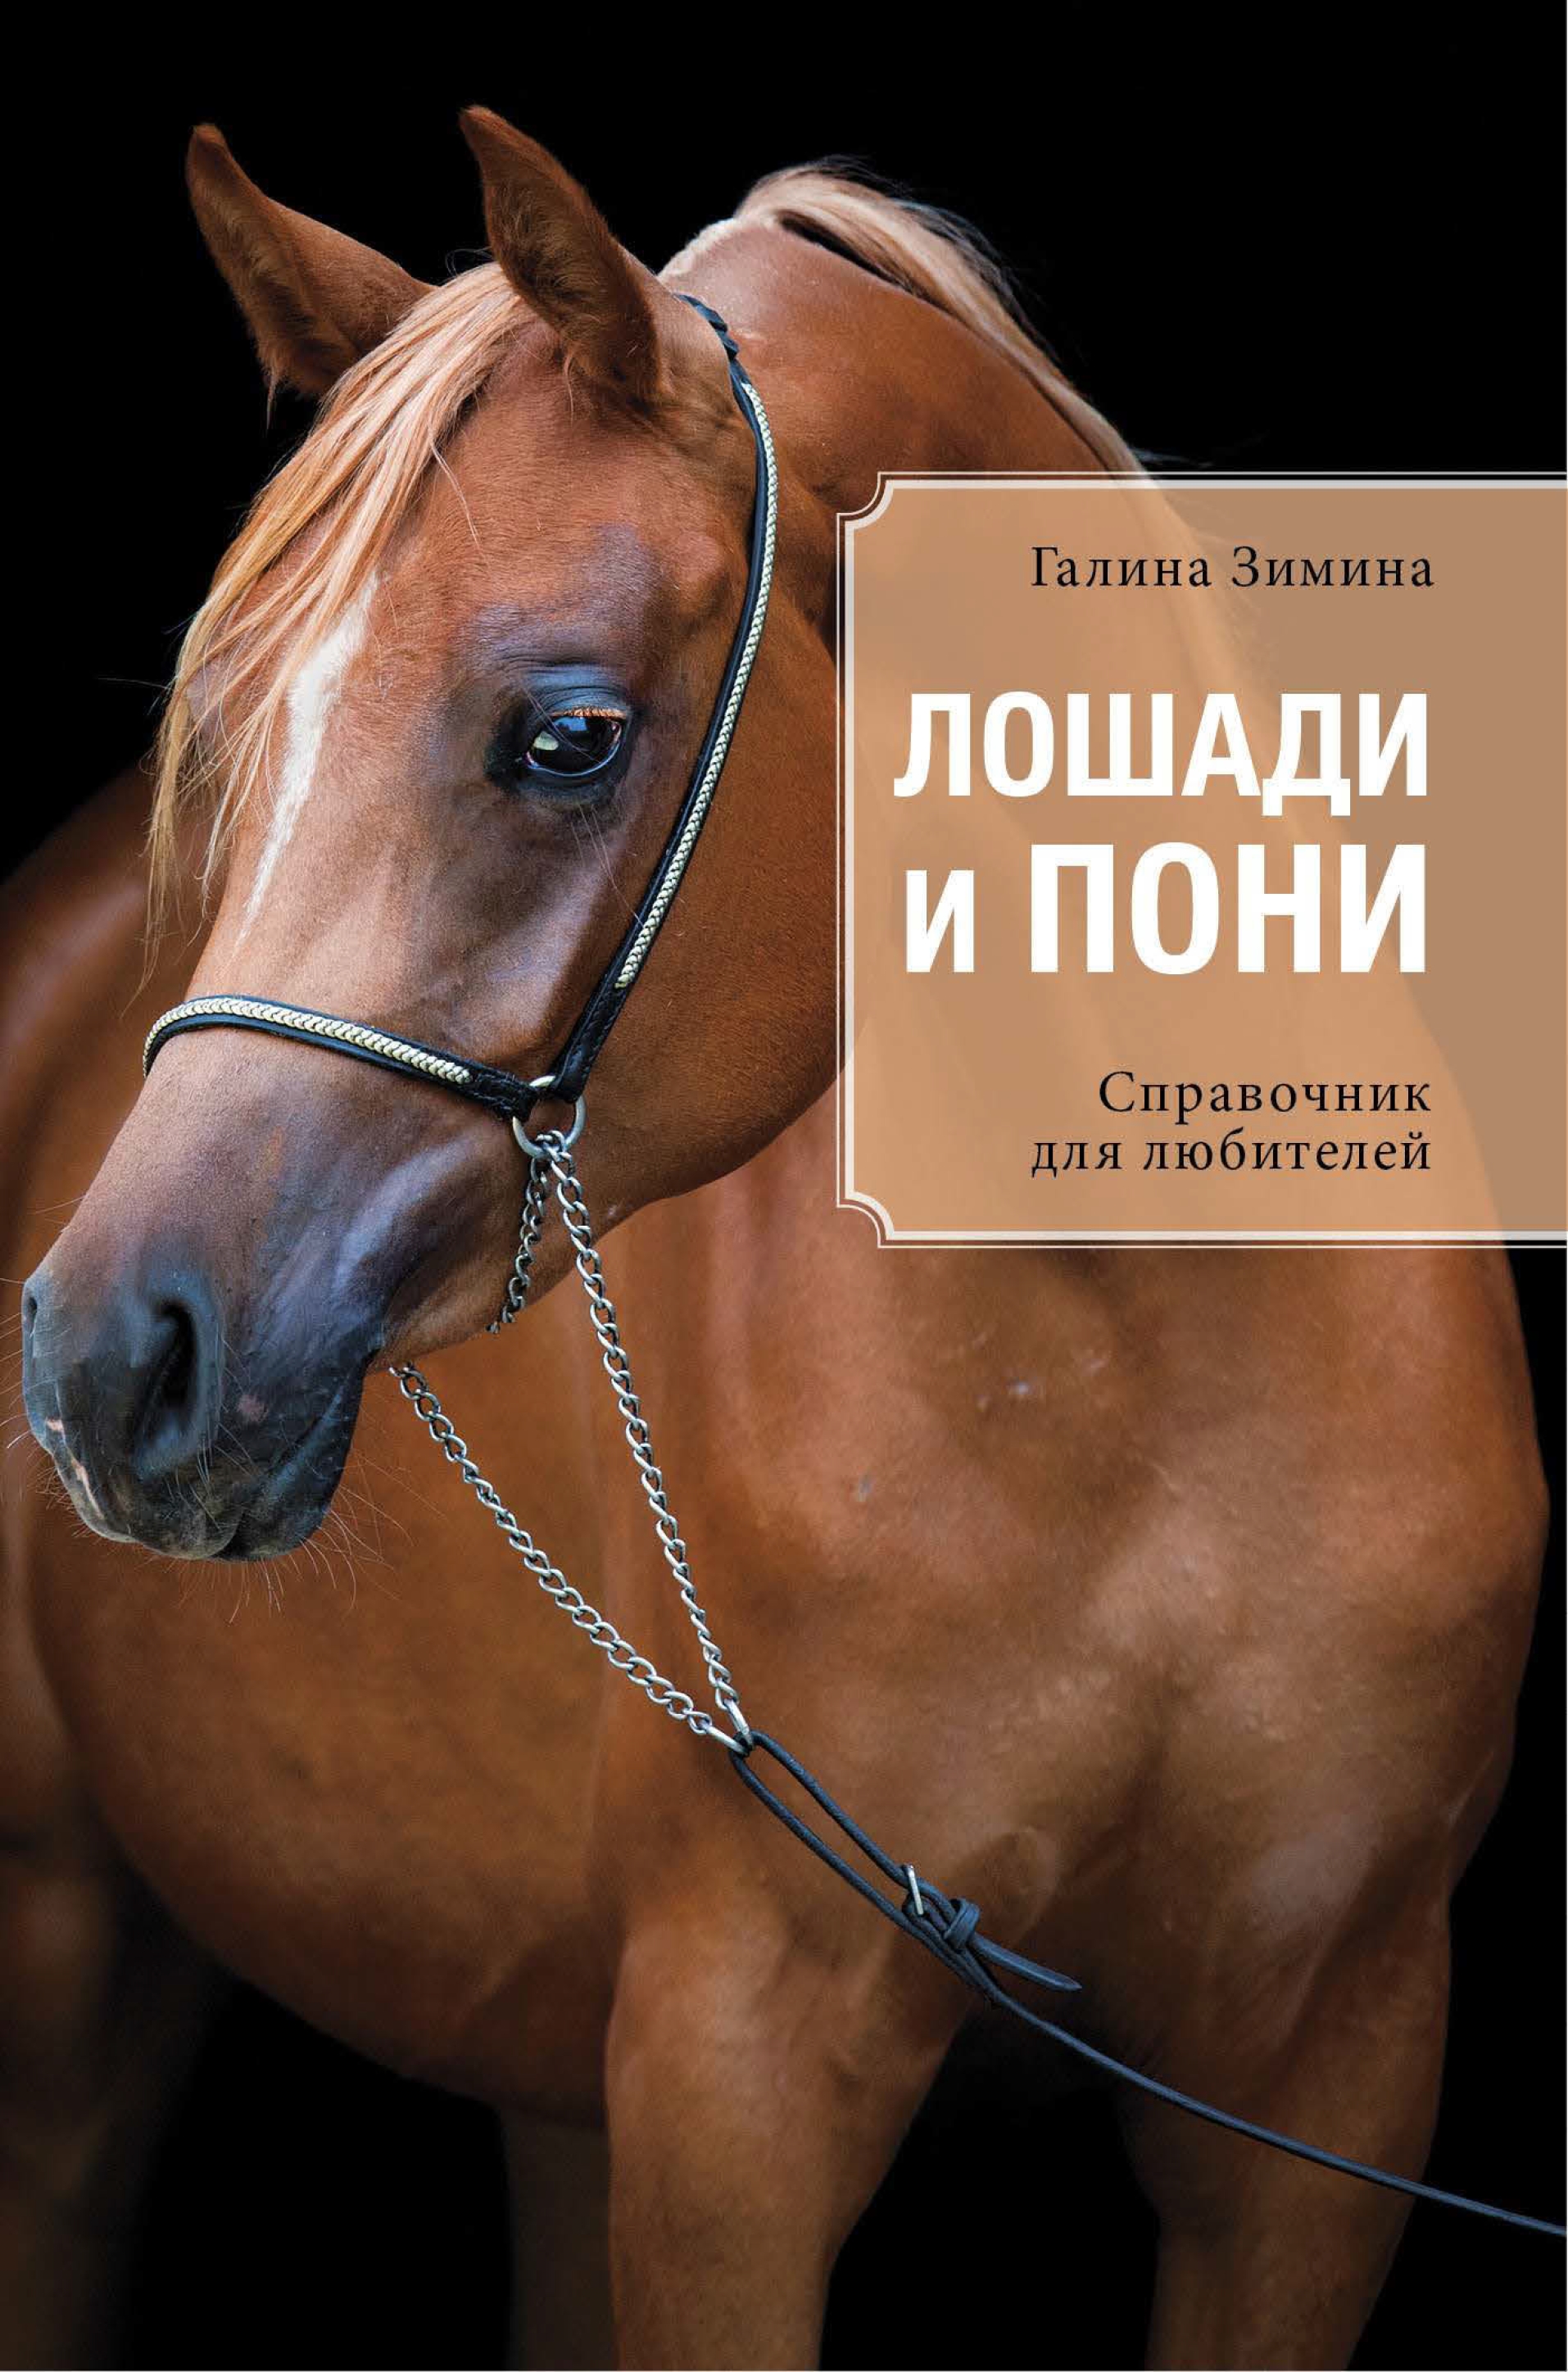 Купить книгу лошади. Лошади и пони Зимина. Обложка книги с лошадью.